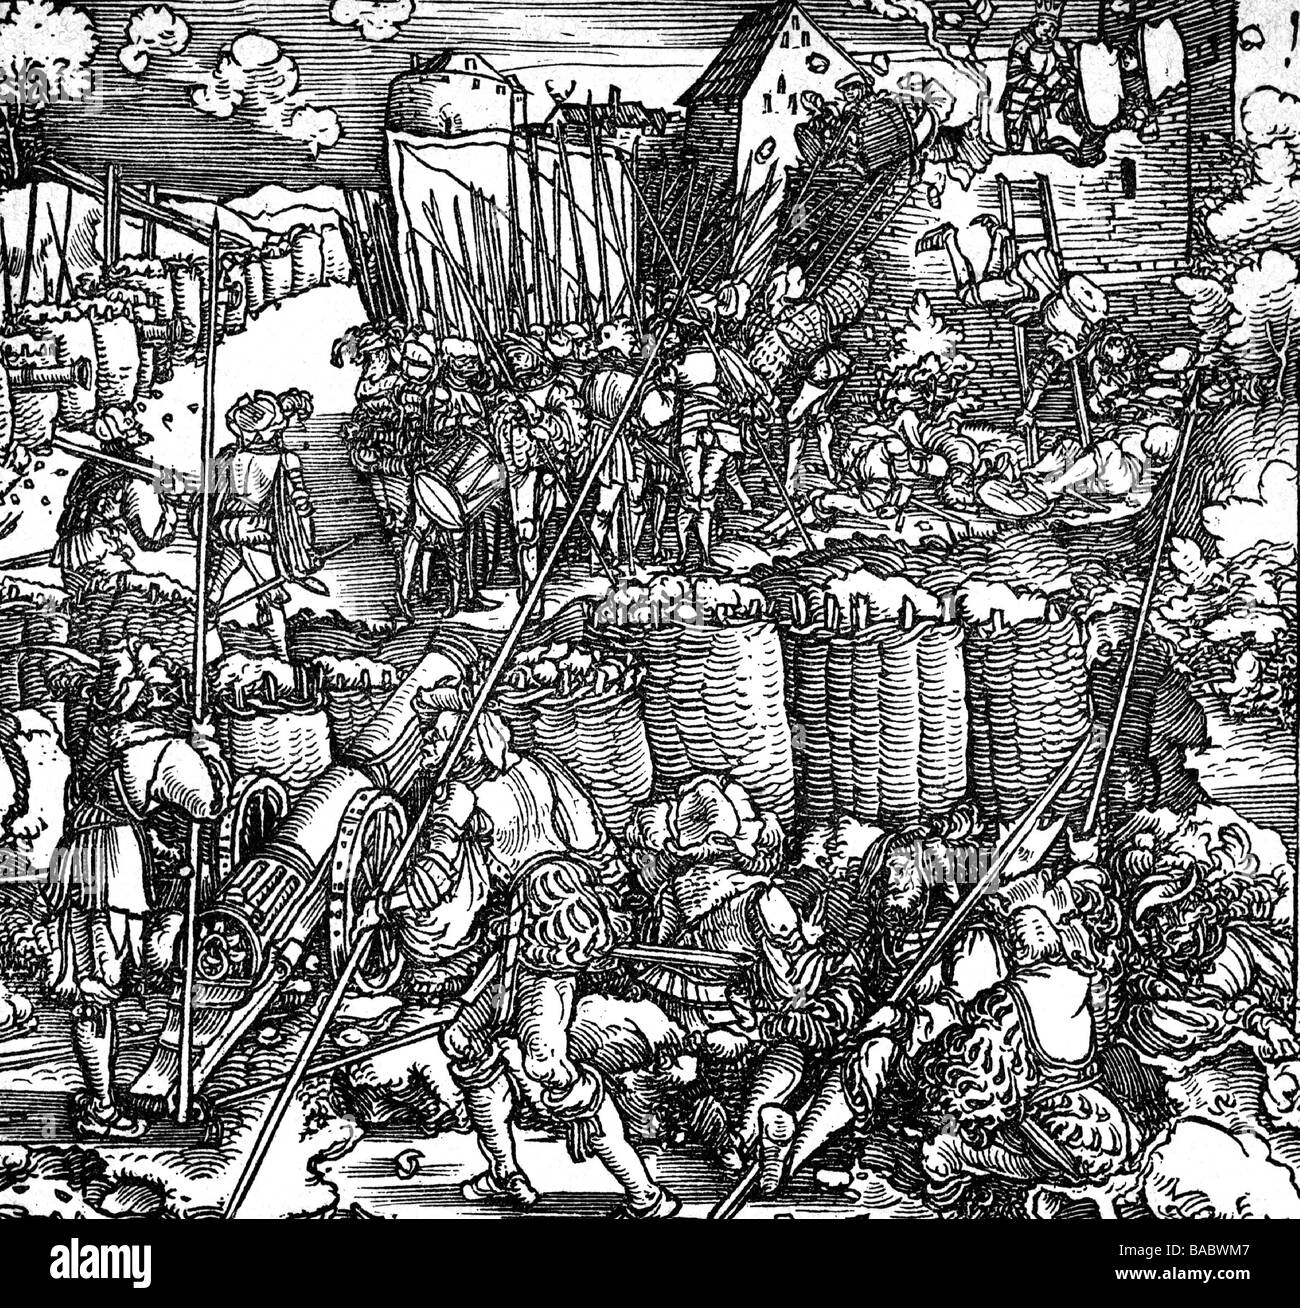 Sickingen, Franz von, 2.3.1481 - 7.5.1523, German knight, siege and escalade of his castle Nanstein near Landstuhl, May 1523, woodcut after Hans Scheufelein (circa 1480 - 1540), Stock Photo